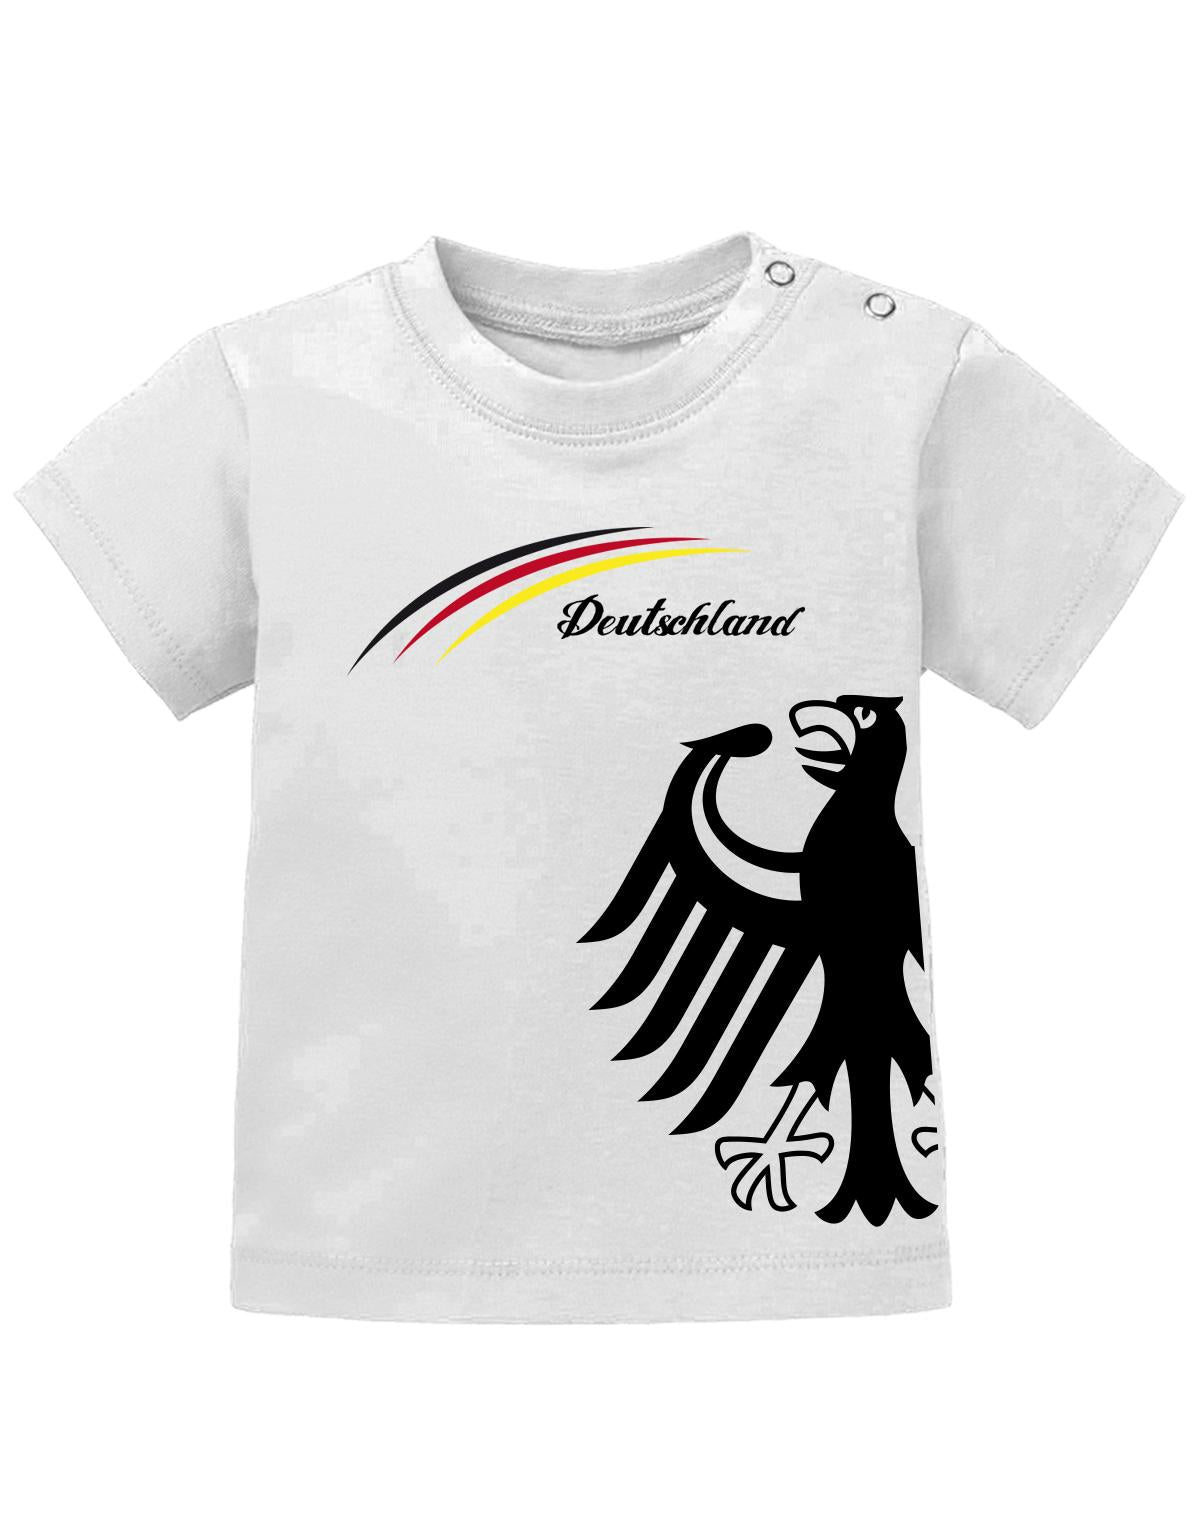 Deutschland-Adler-baby-Shirt-Weiss